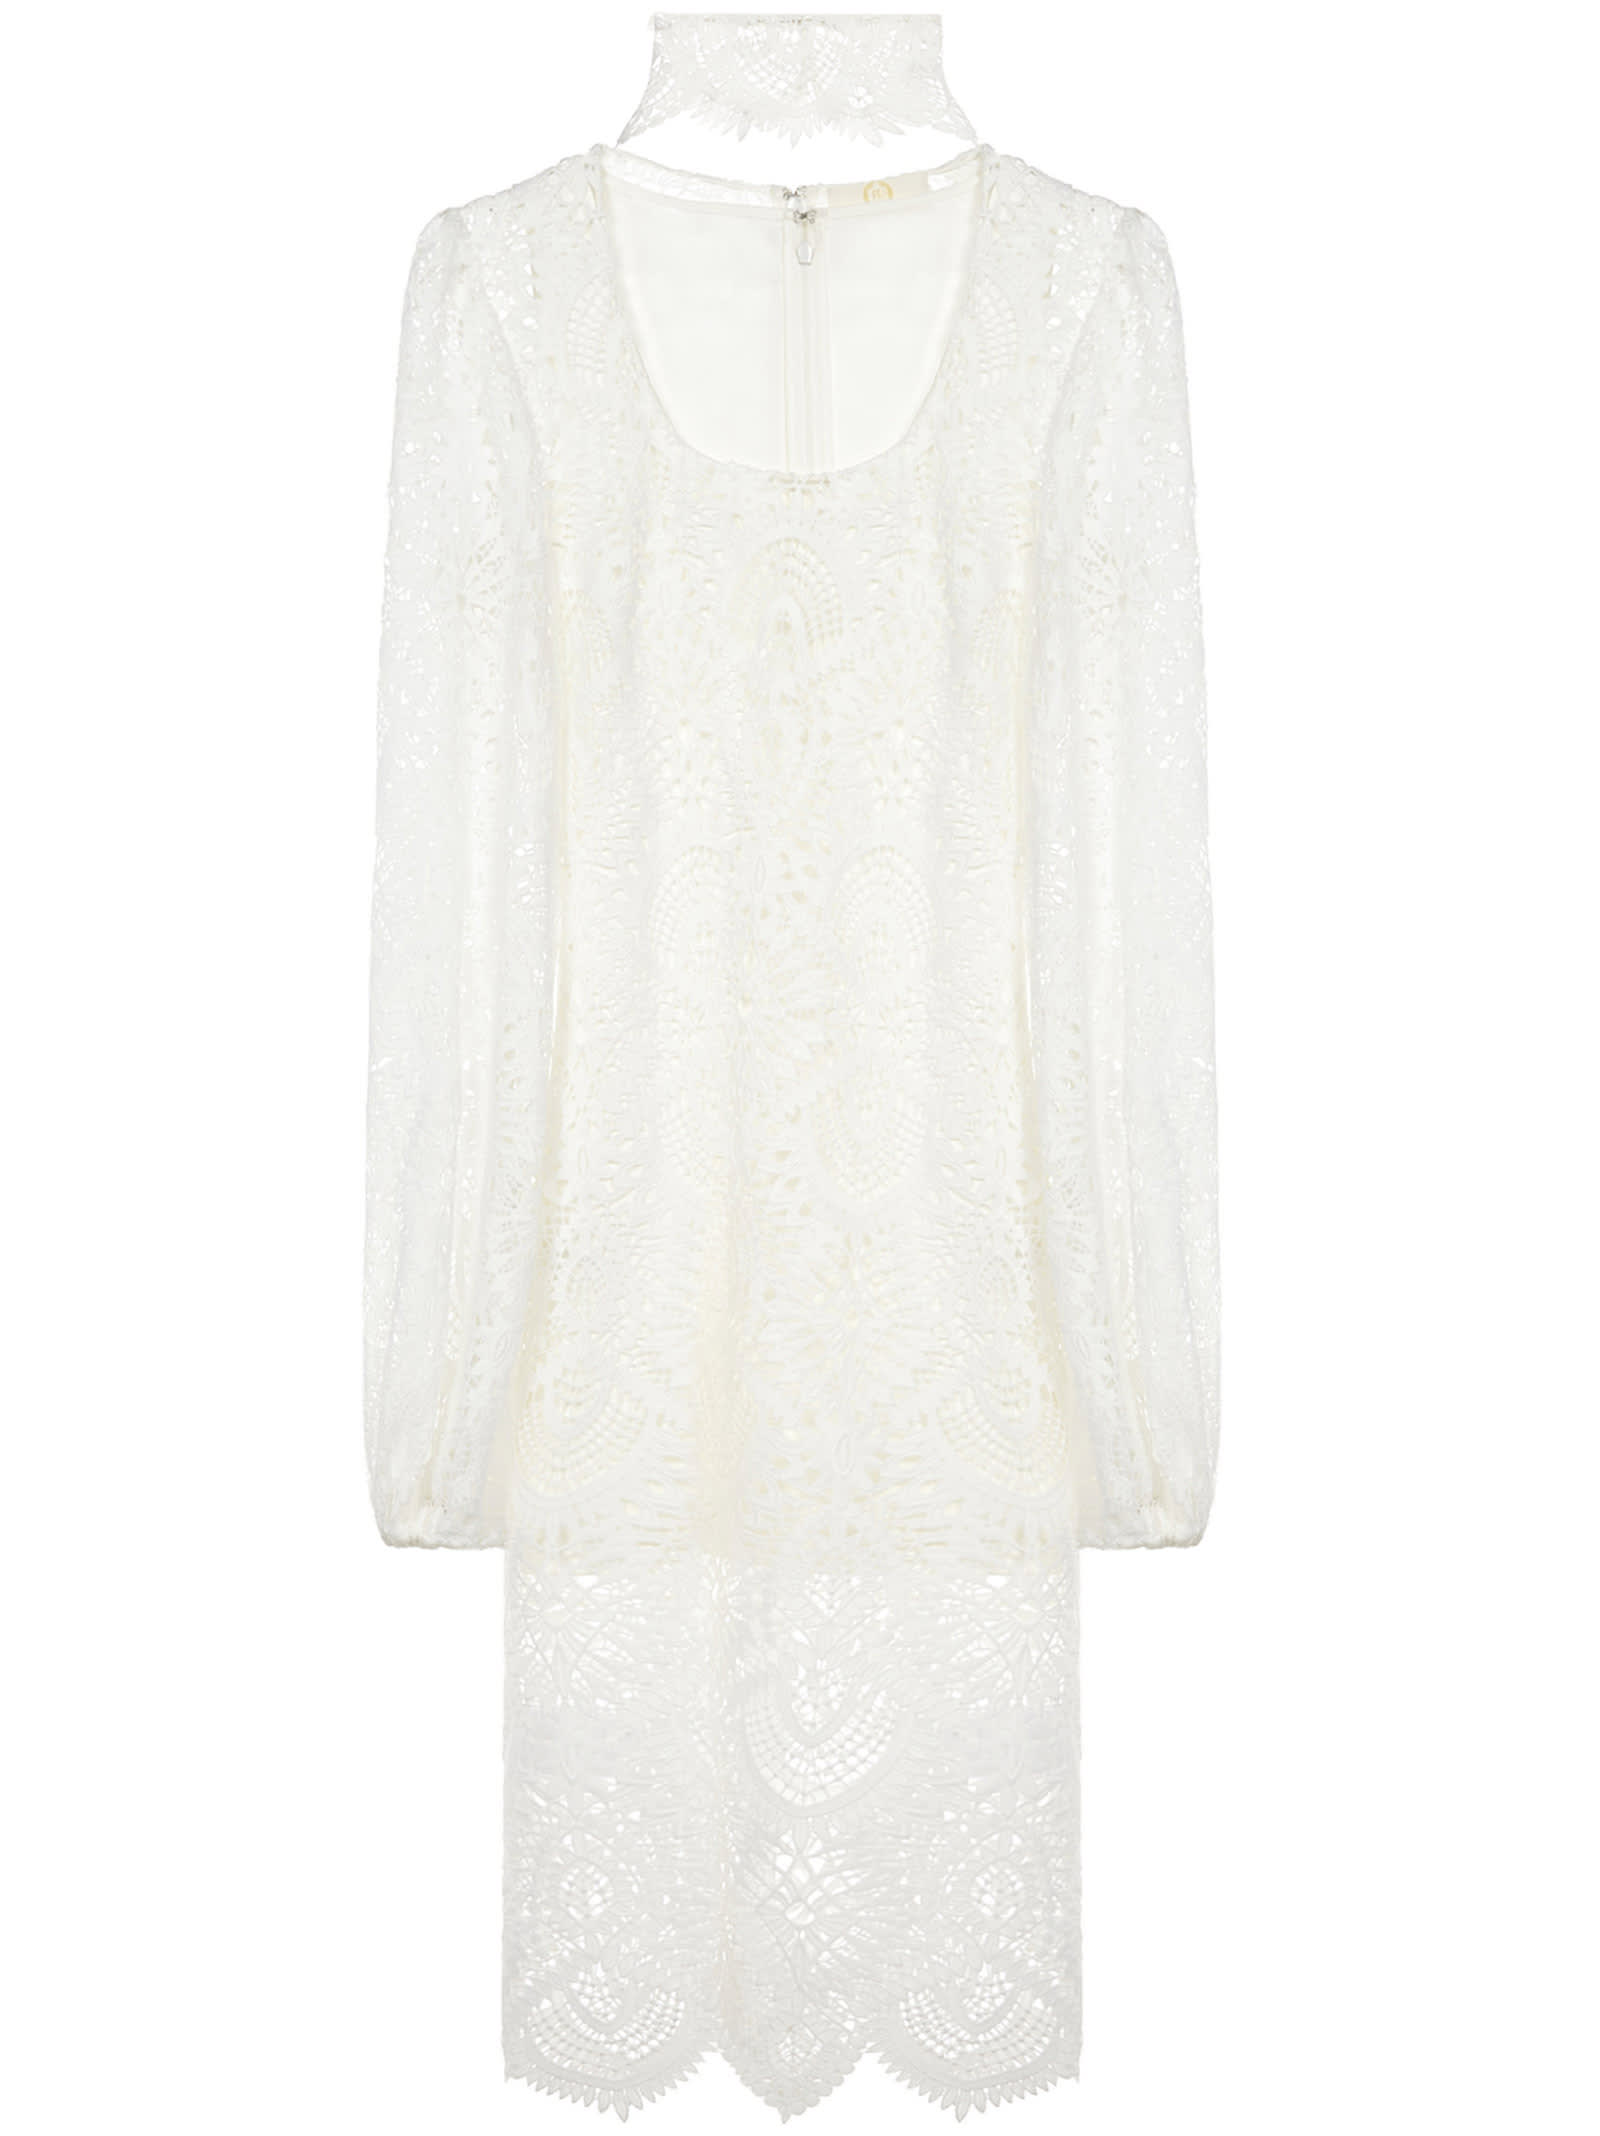 Sara Battaglia Short Dress In White